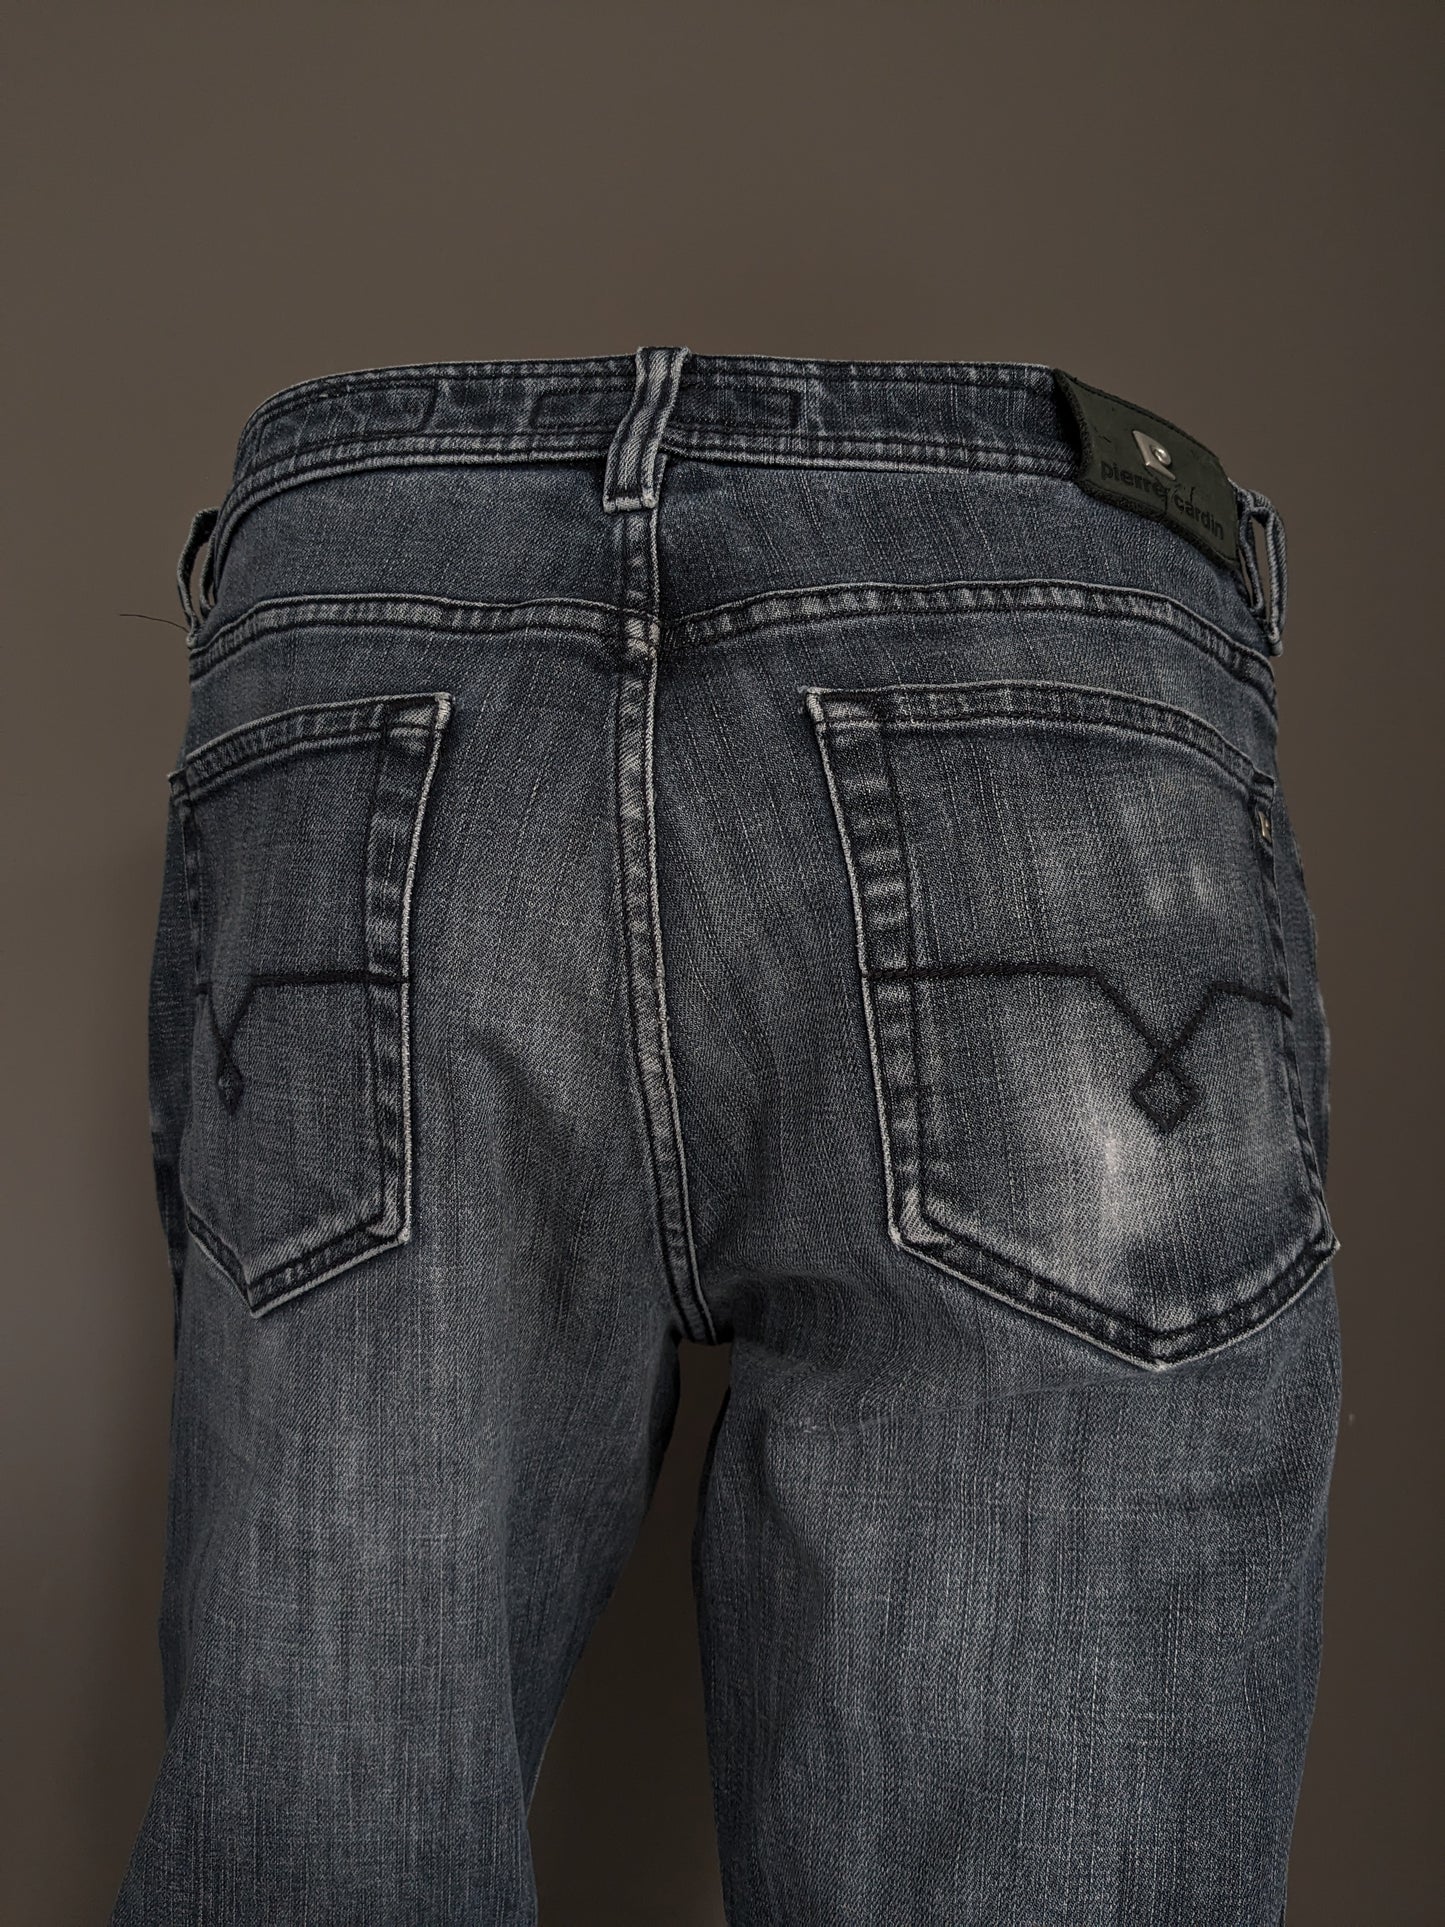 Jeans Pierre Cardin. Couleur gris noir. Taille W33 - L30. Type Mod Deauville.